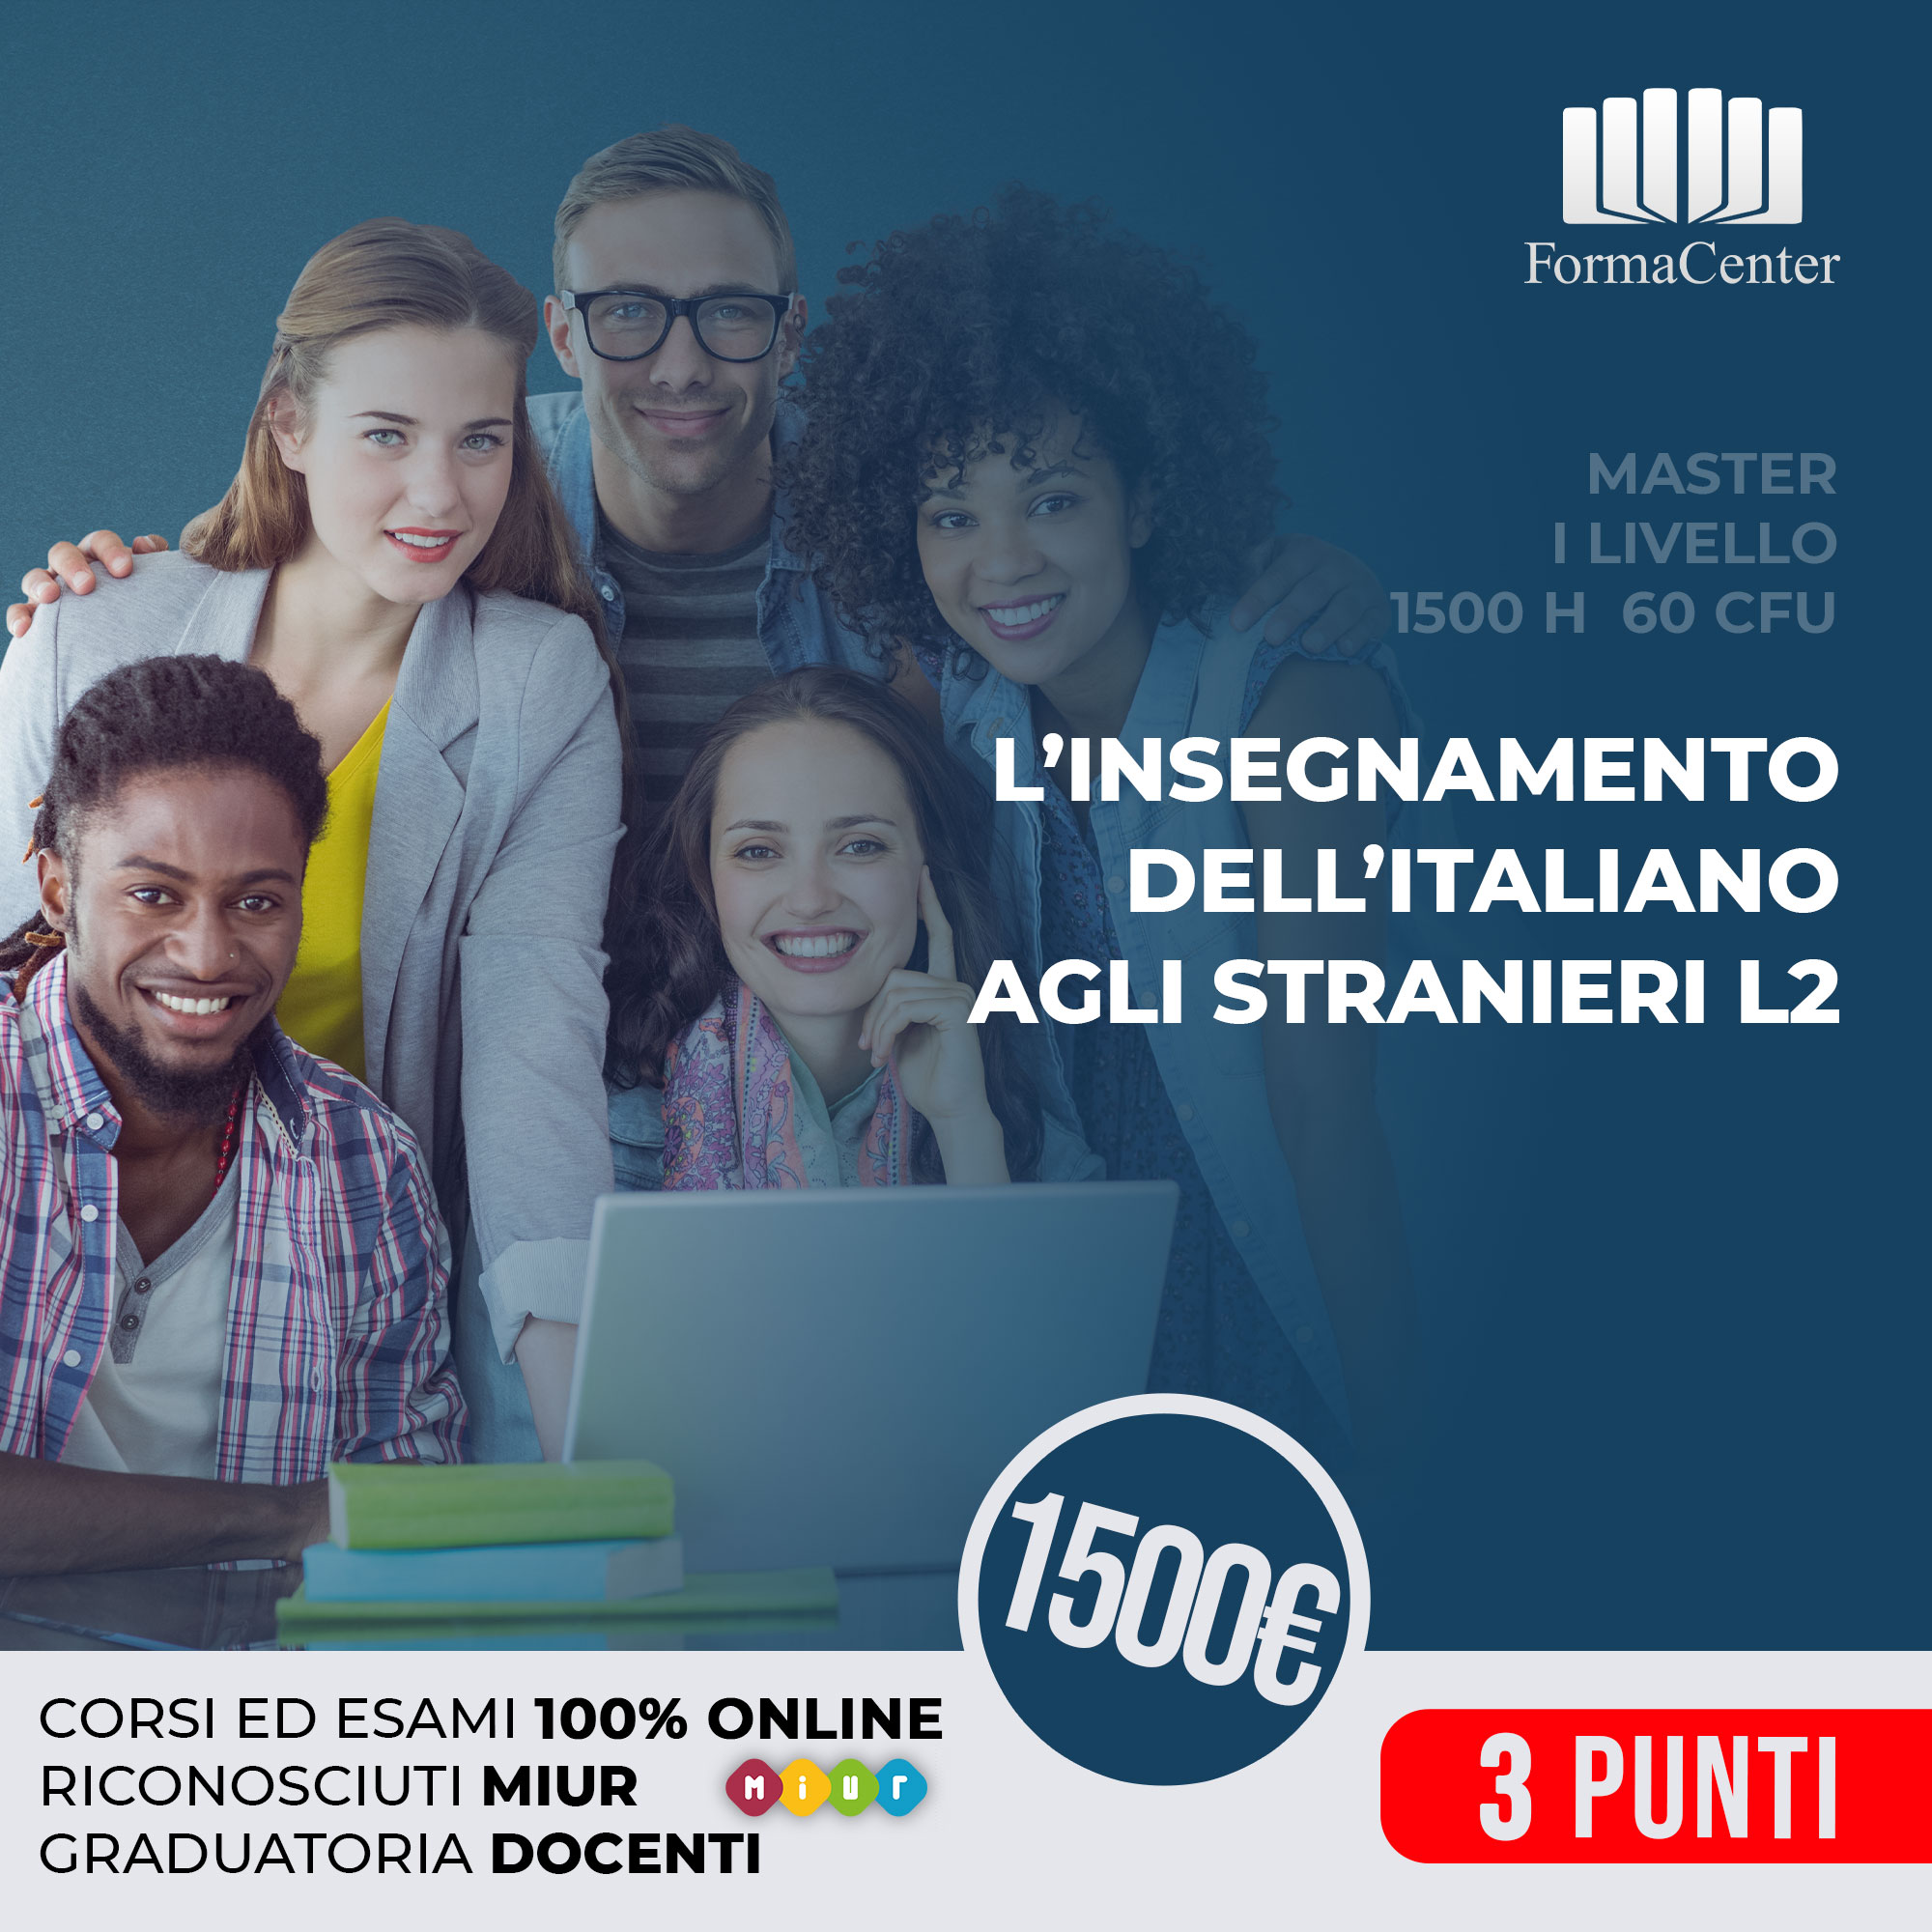 L'insegnamento dell'italiano agli stranieri, L2